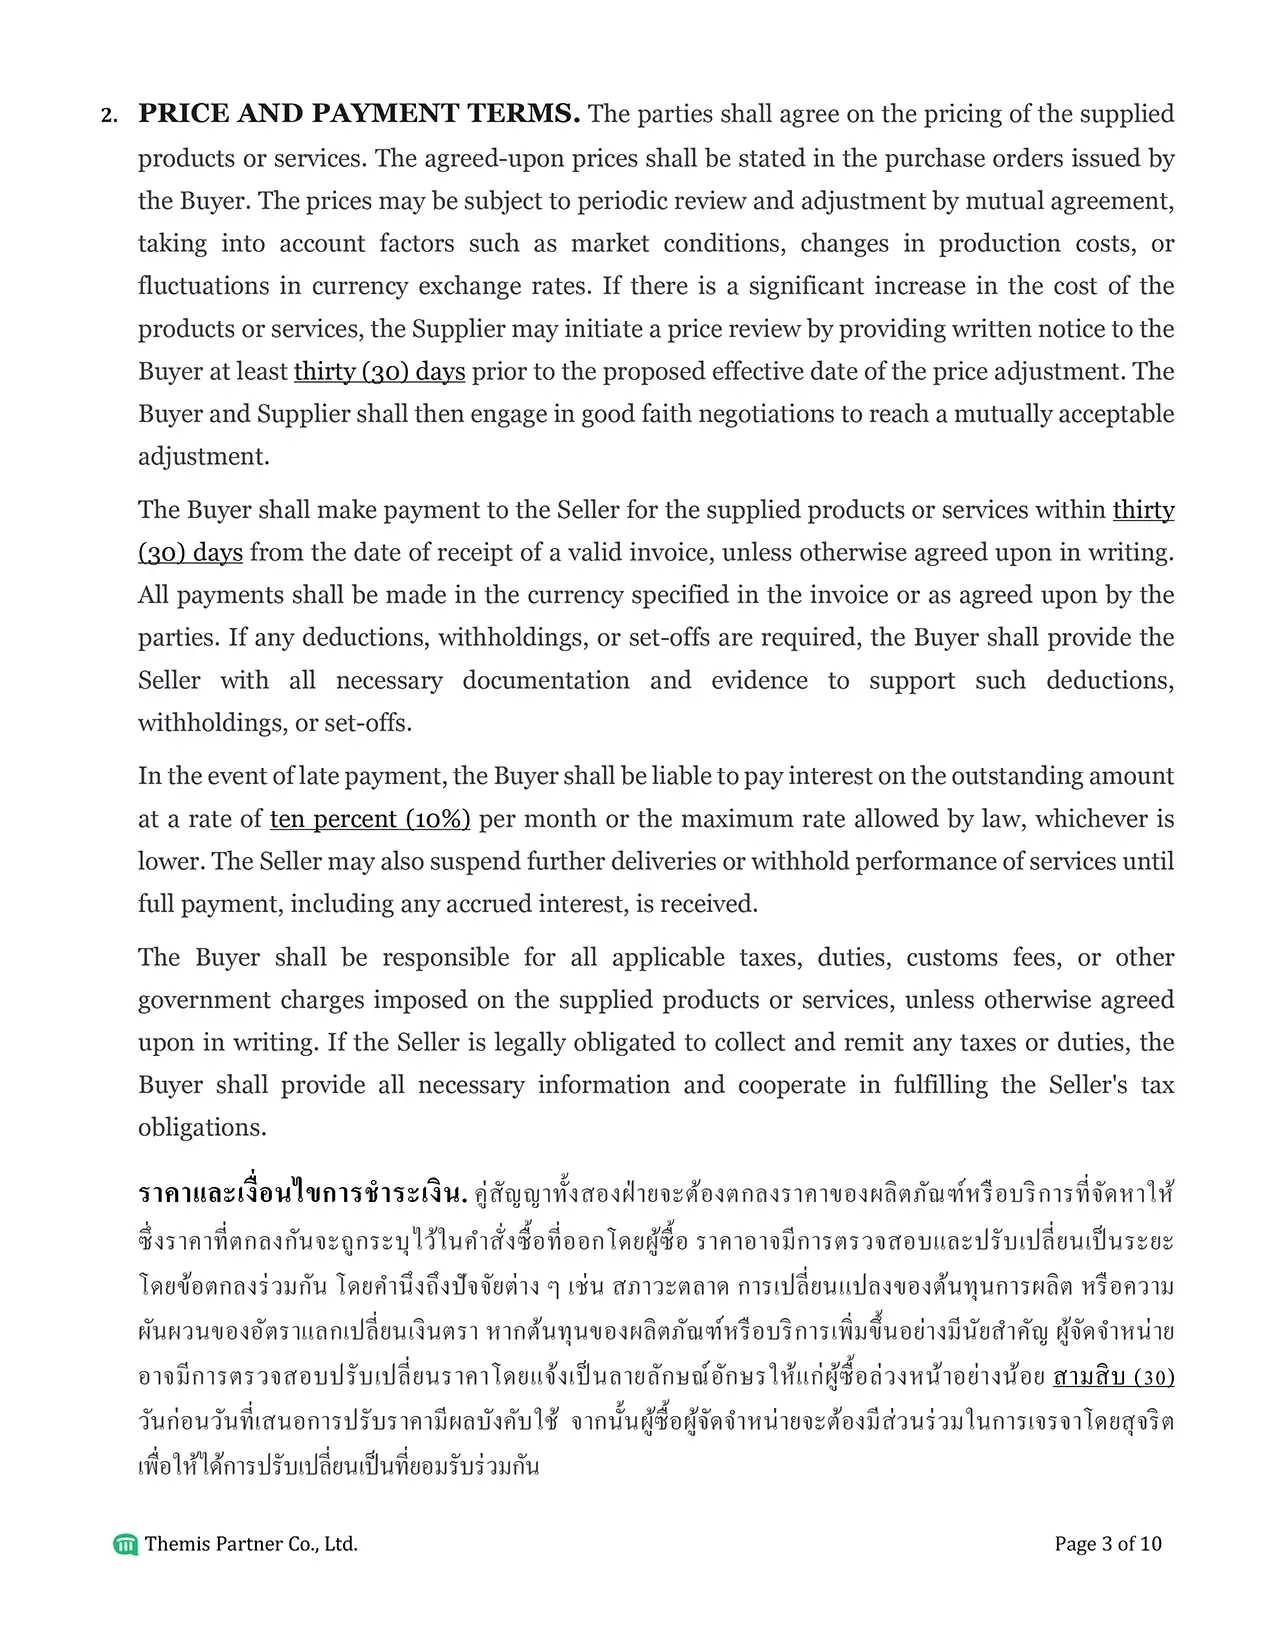 Supply agreement Thailand 3